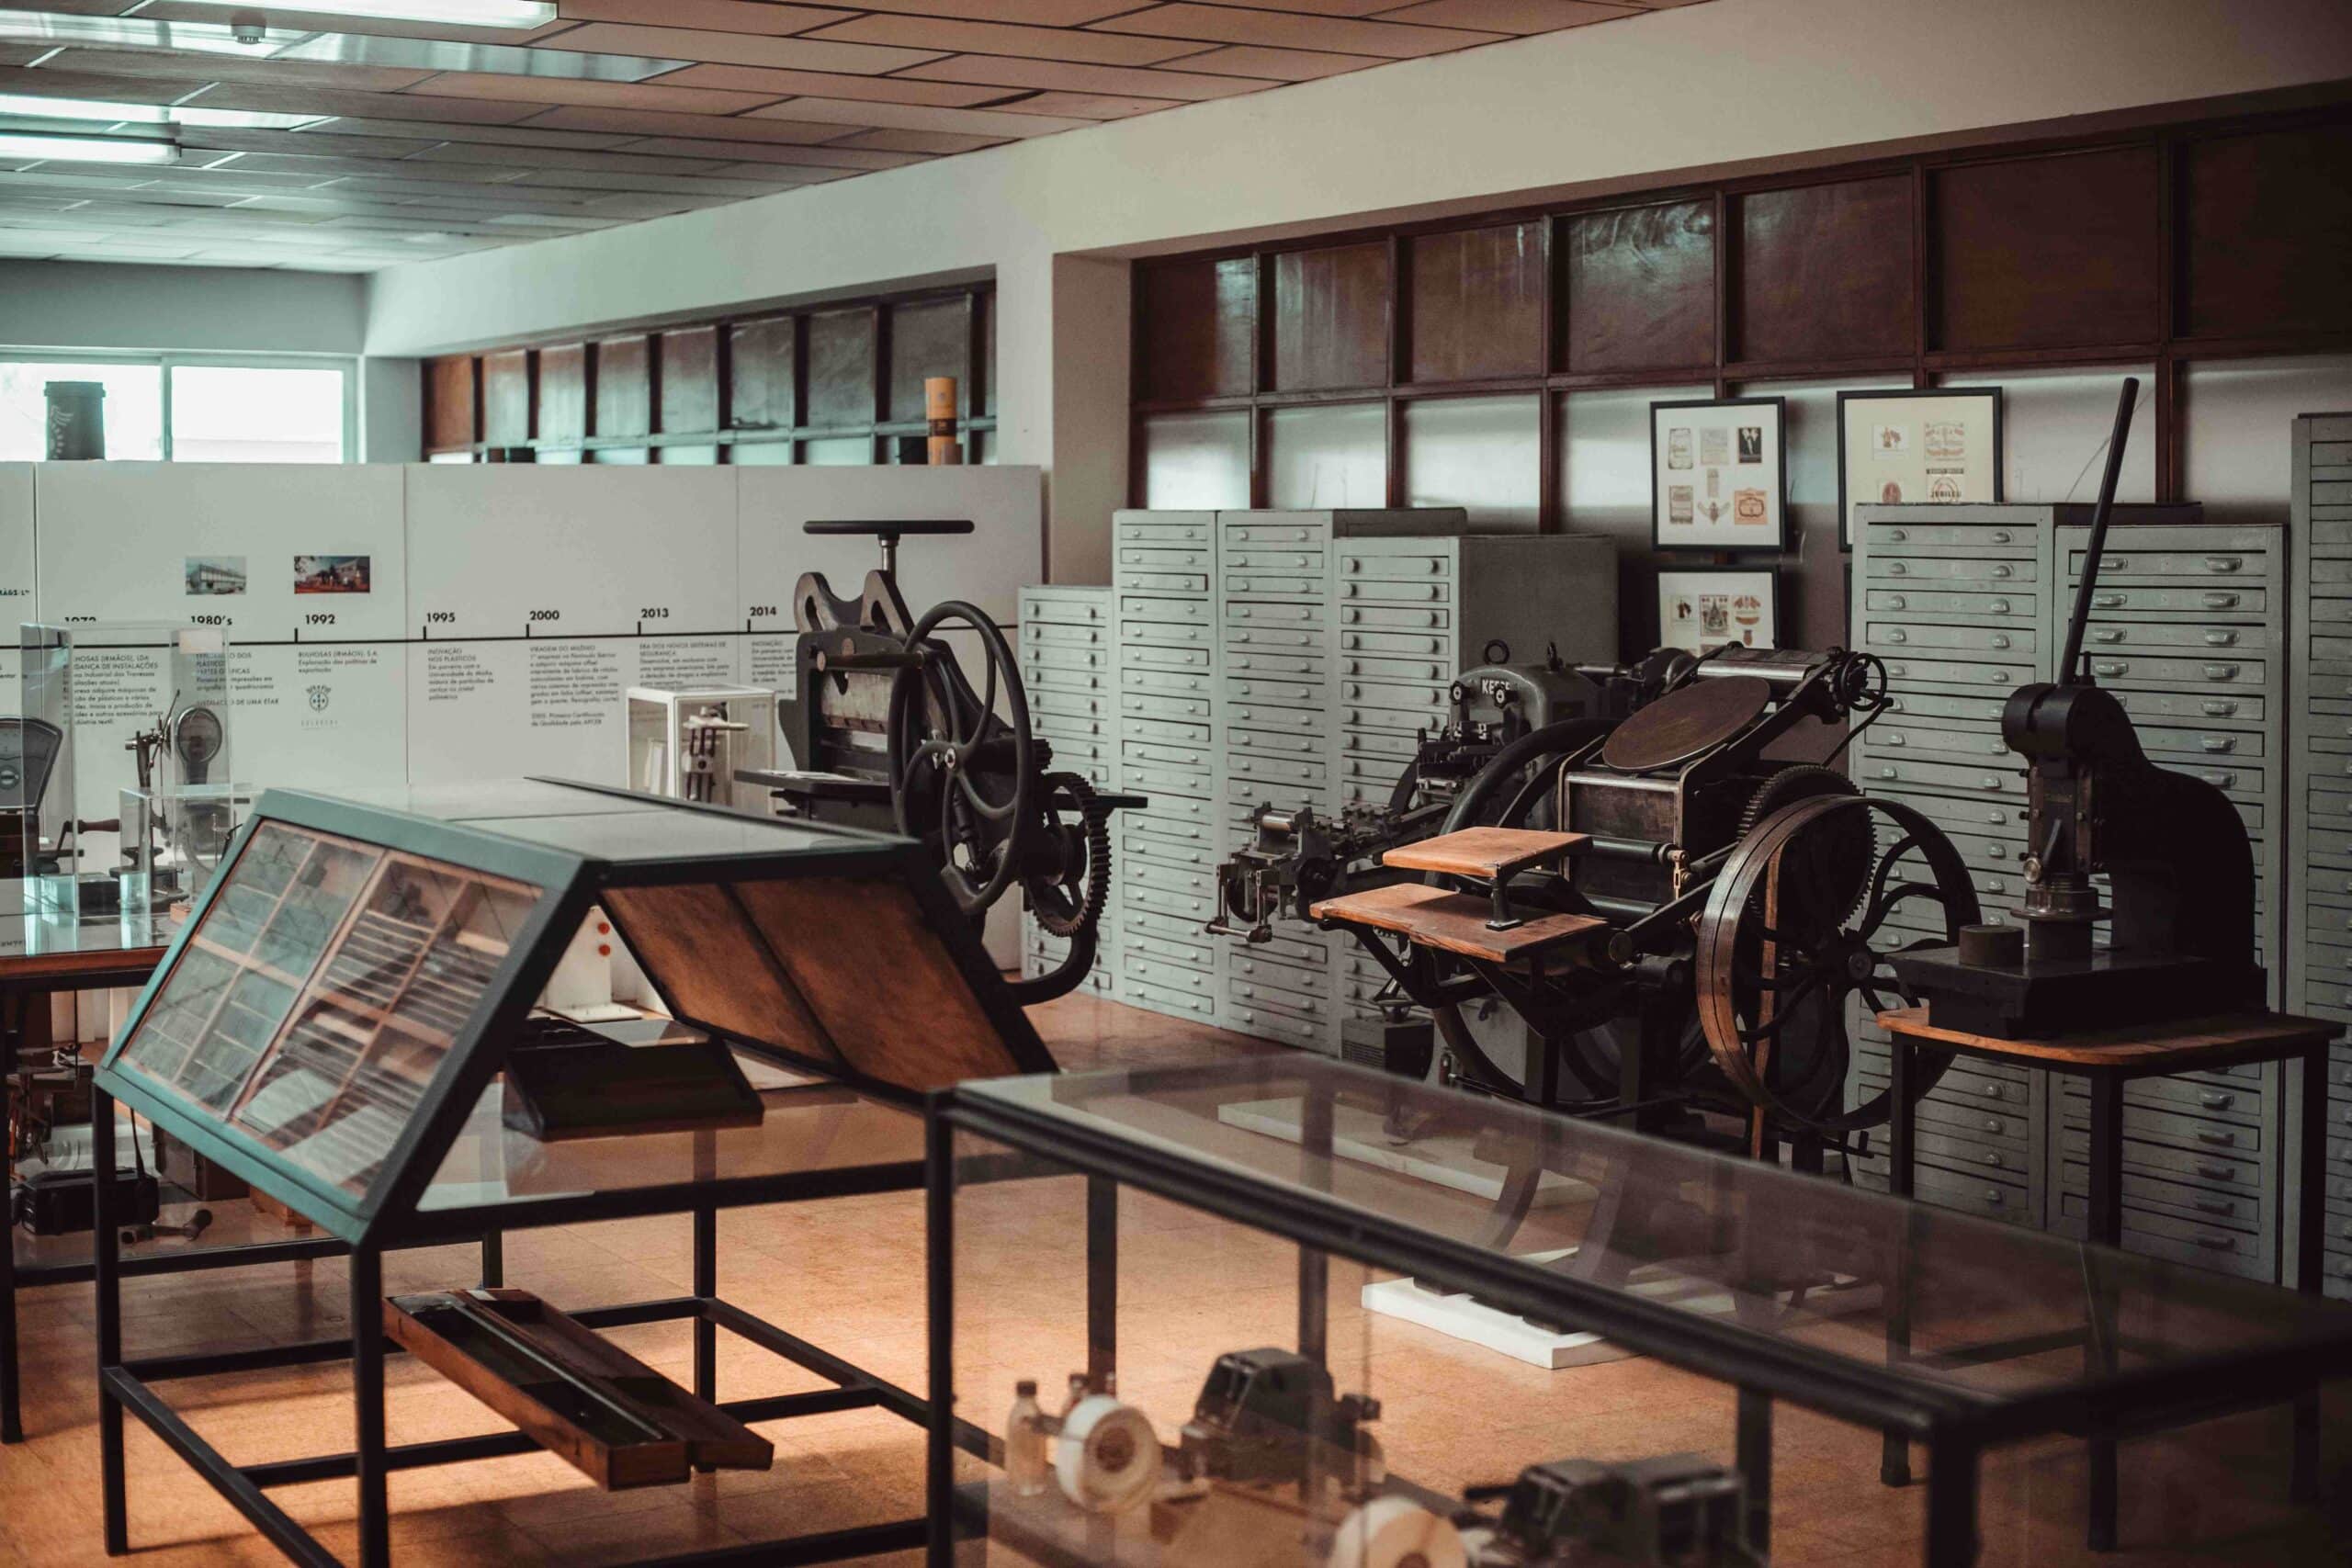 Sala presente na fábrica Bulhosas com vários materiais e maquinas utilizadas na mesma